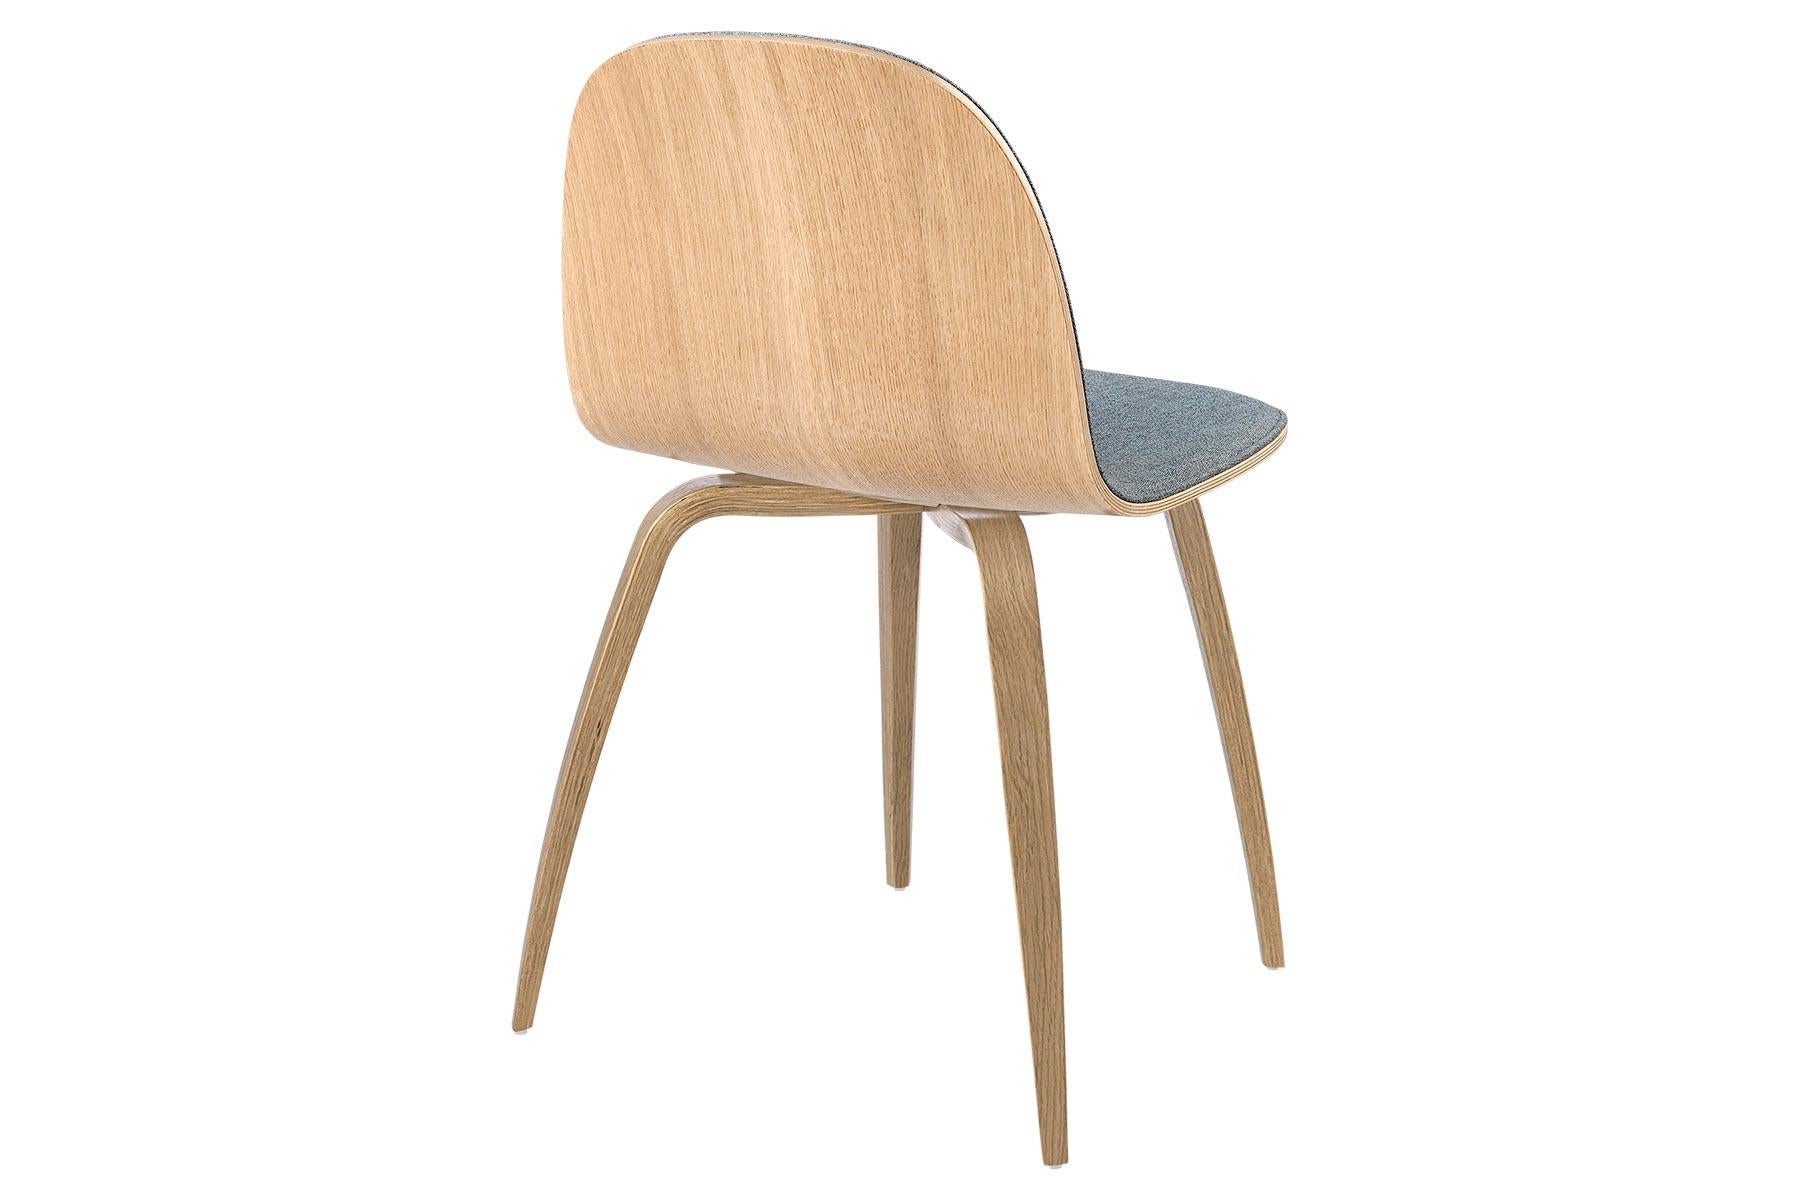 Der GUBI 2D Chair ist eine Serie leichter Esszimmerstühle aus laminiertem Furnier mit der Möglichkeit, die Vorderseite mit einer Vielzahl von Stoffen und Ledern zu beziehen, die sowohl für private als auch für öffentliche Räume geeignet sind. Als